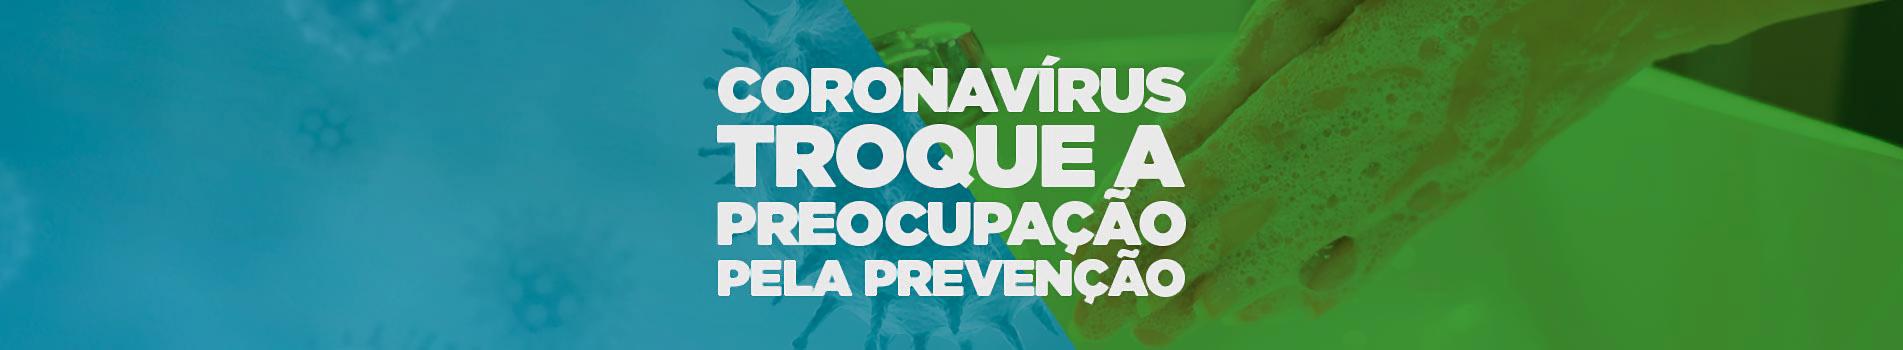 Coronavírus, troque a preocupação pela prevenção